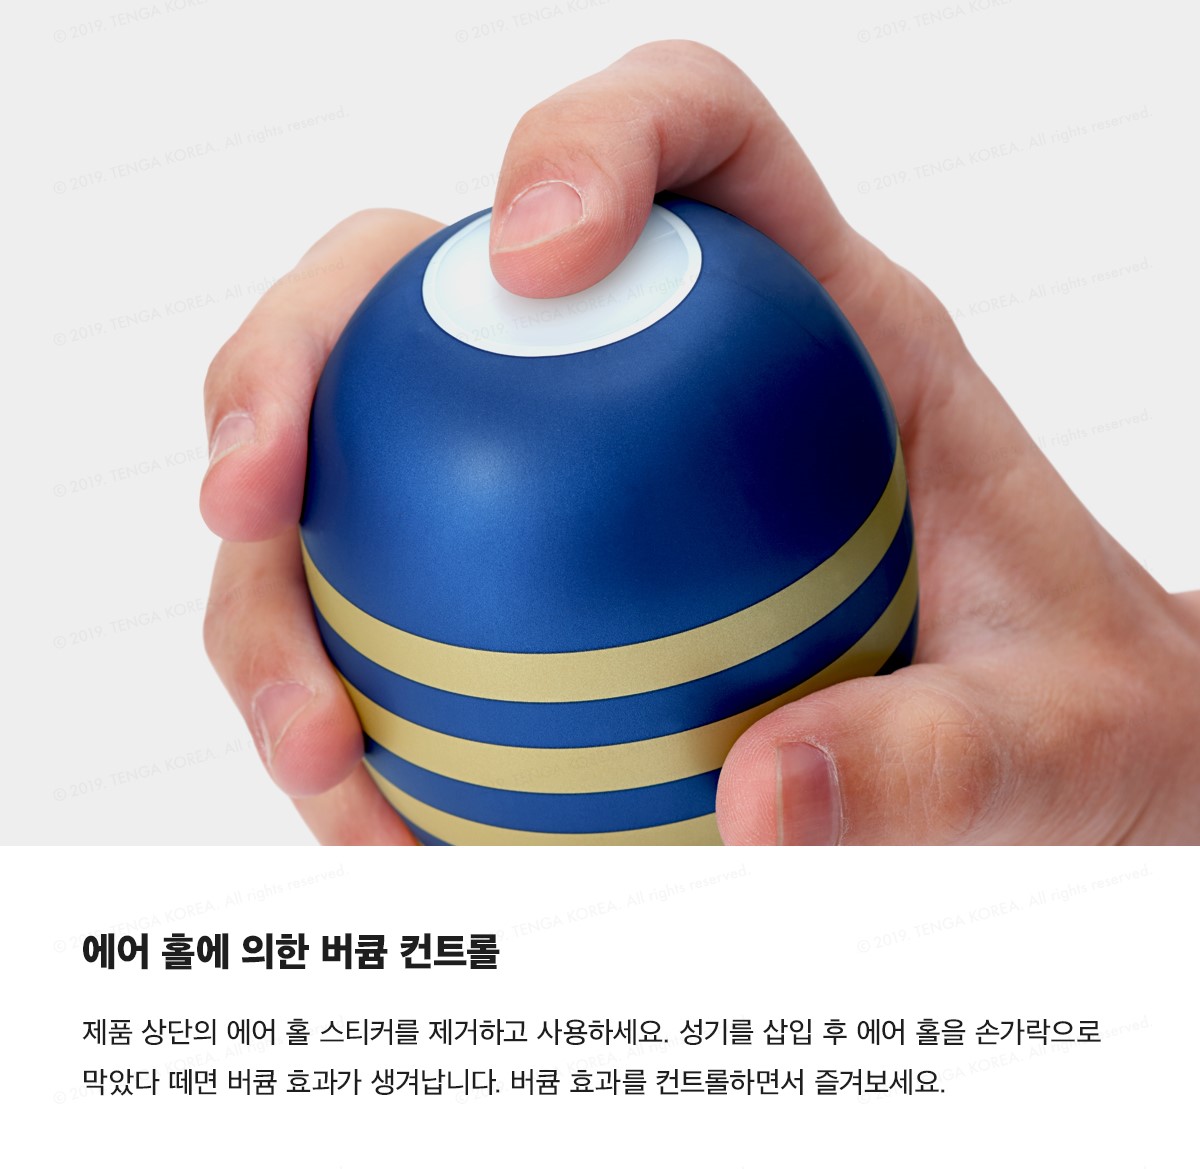 프리미엄 텐가 오리지널 버큠 컵 PREMIUM TENGA ORIGINAL VACUUM CUP